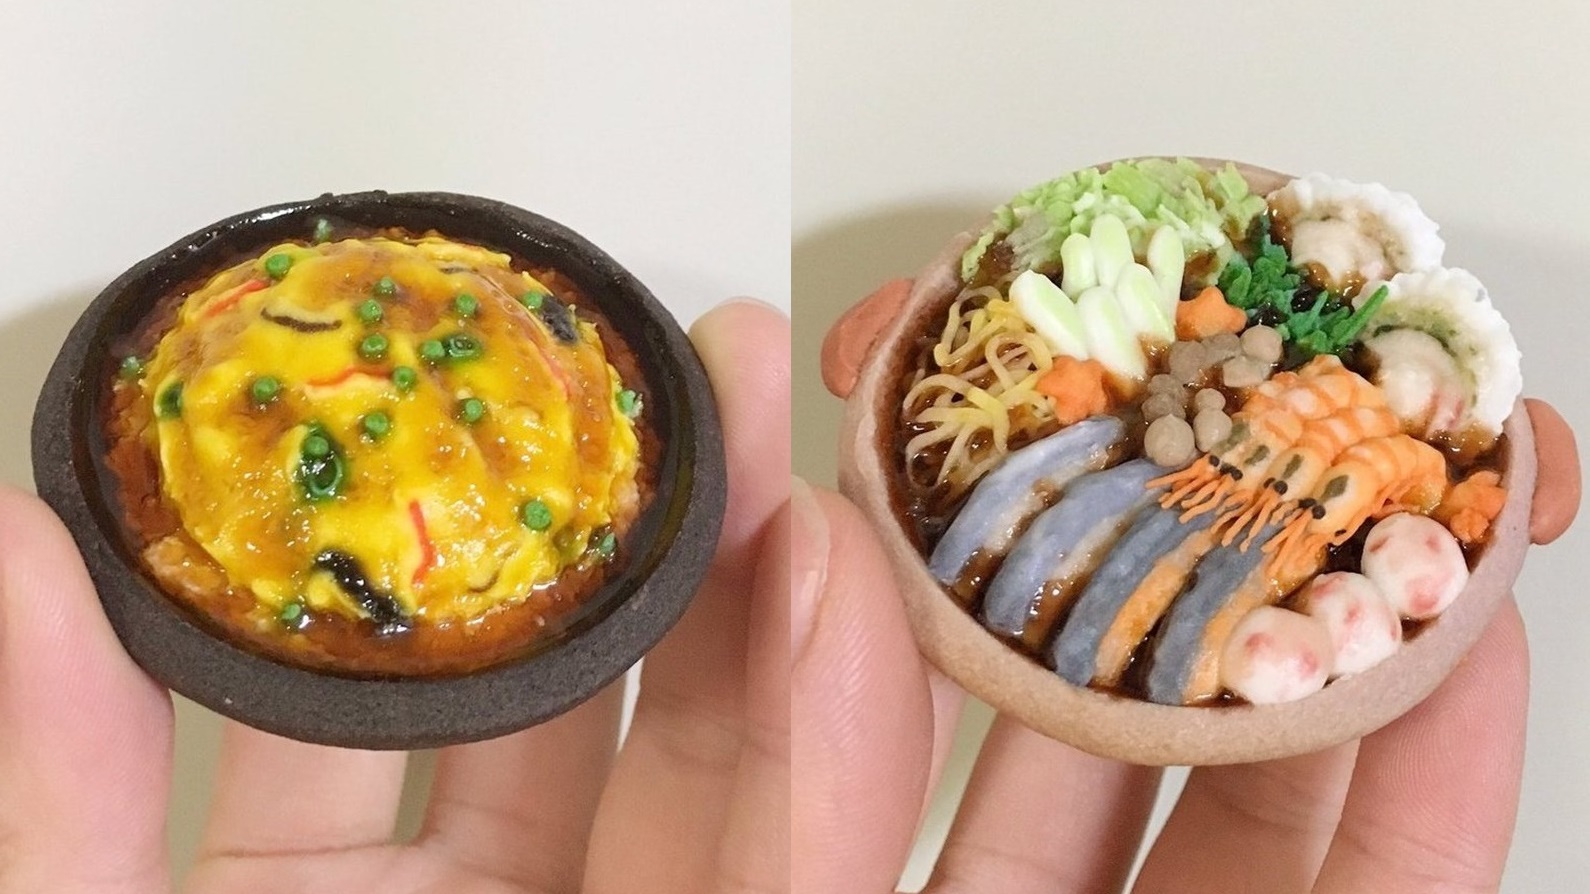 ศิลปินชาวญี่ปุ่นสร้างสรรค์ “คุกกี้อาหารจิ๋ว” ที่เหมือนของจริงสุดๆ แถมกินได้จริงๆ !?